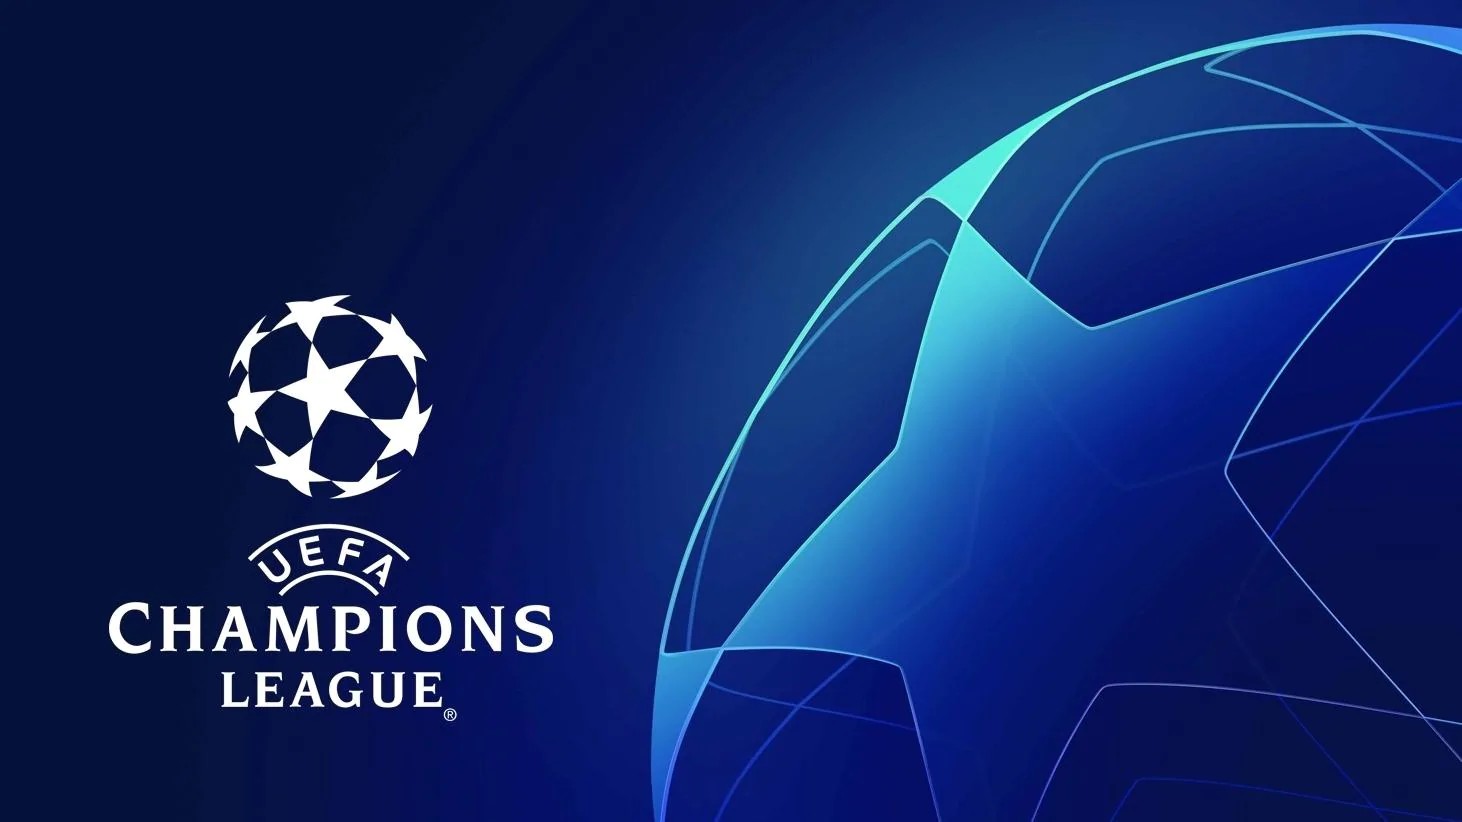 Champions League 2022/23, oggi il sorteggio dei gironi: ecco dove seguirlo